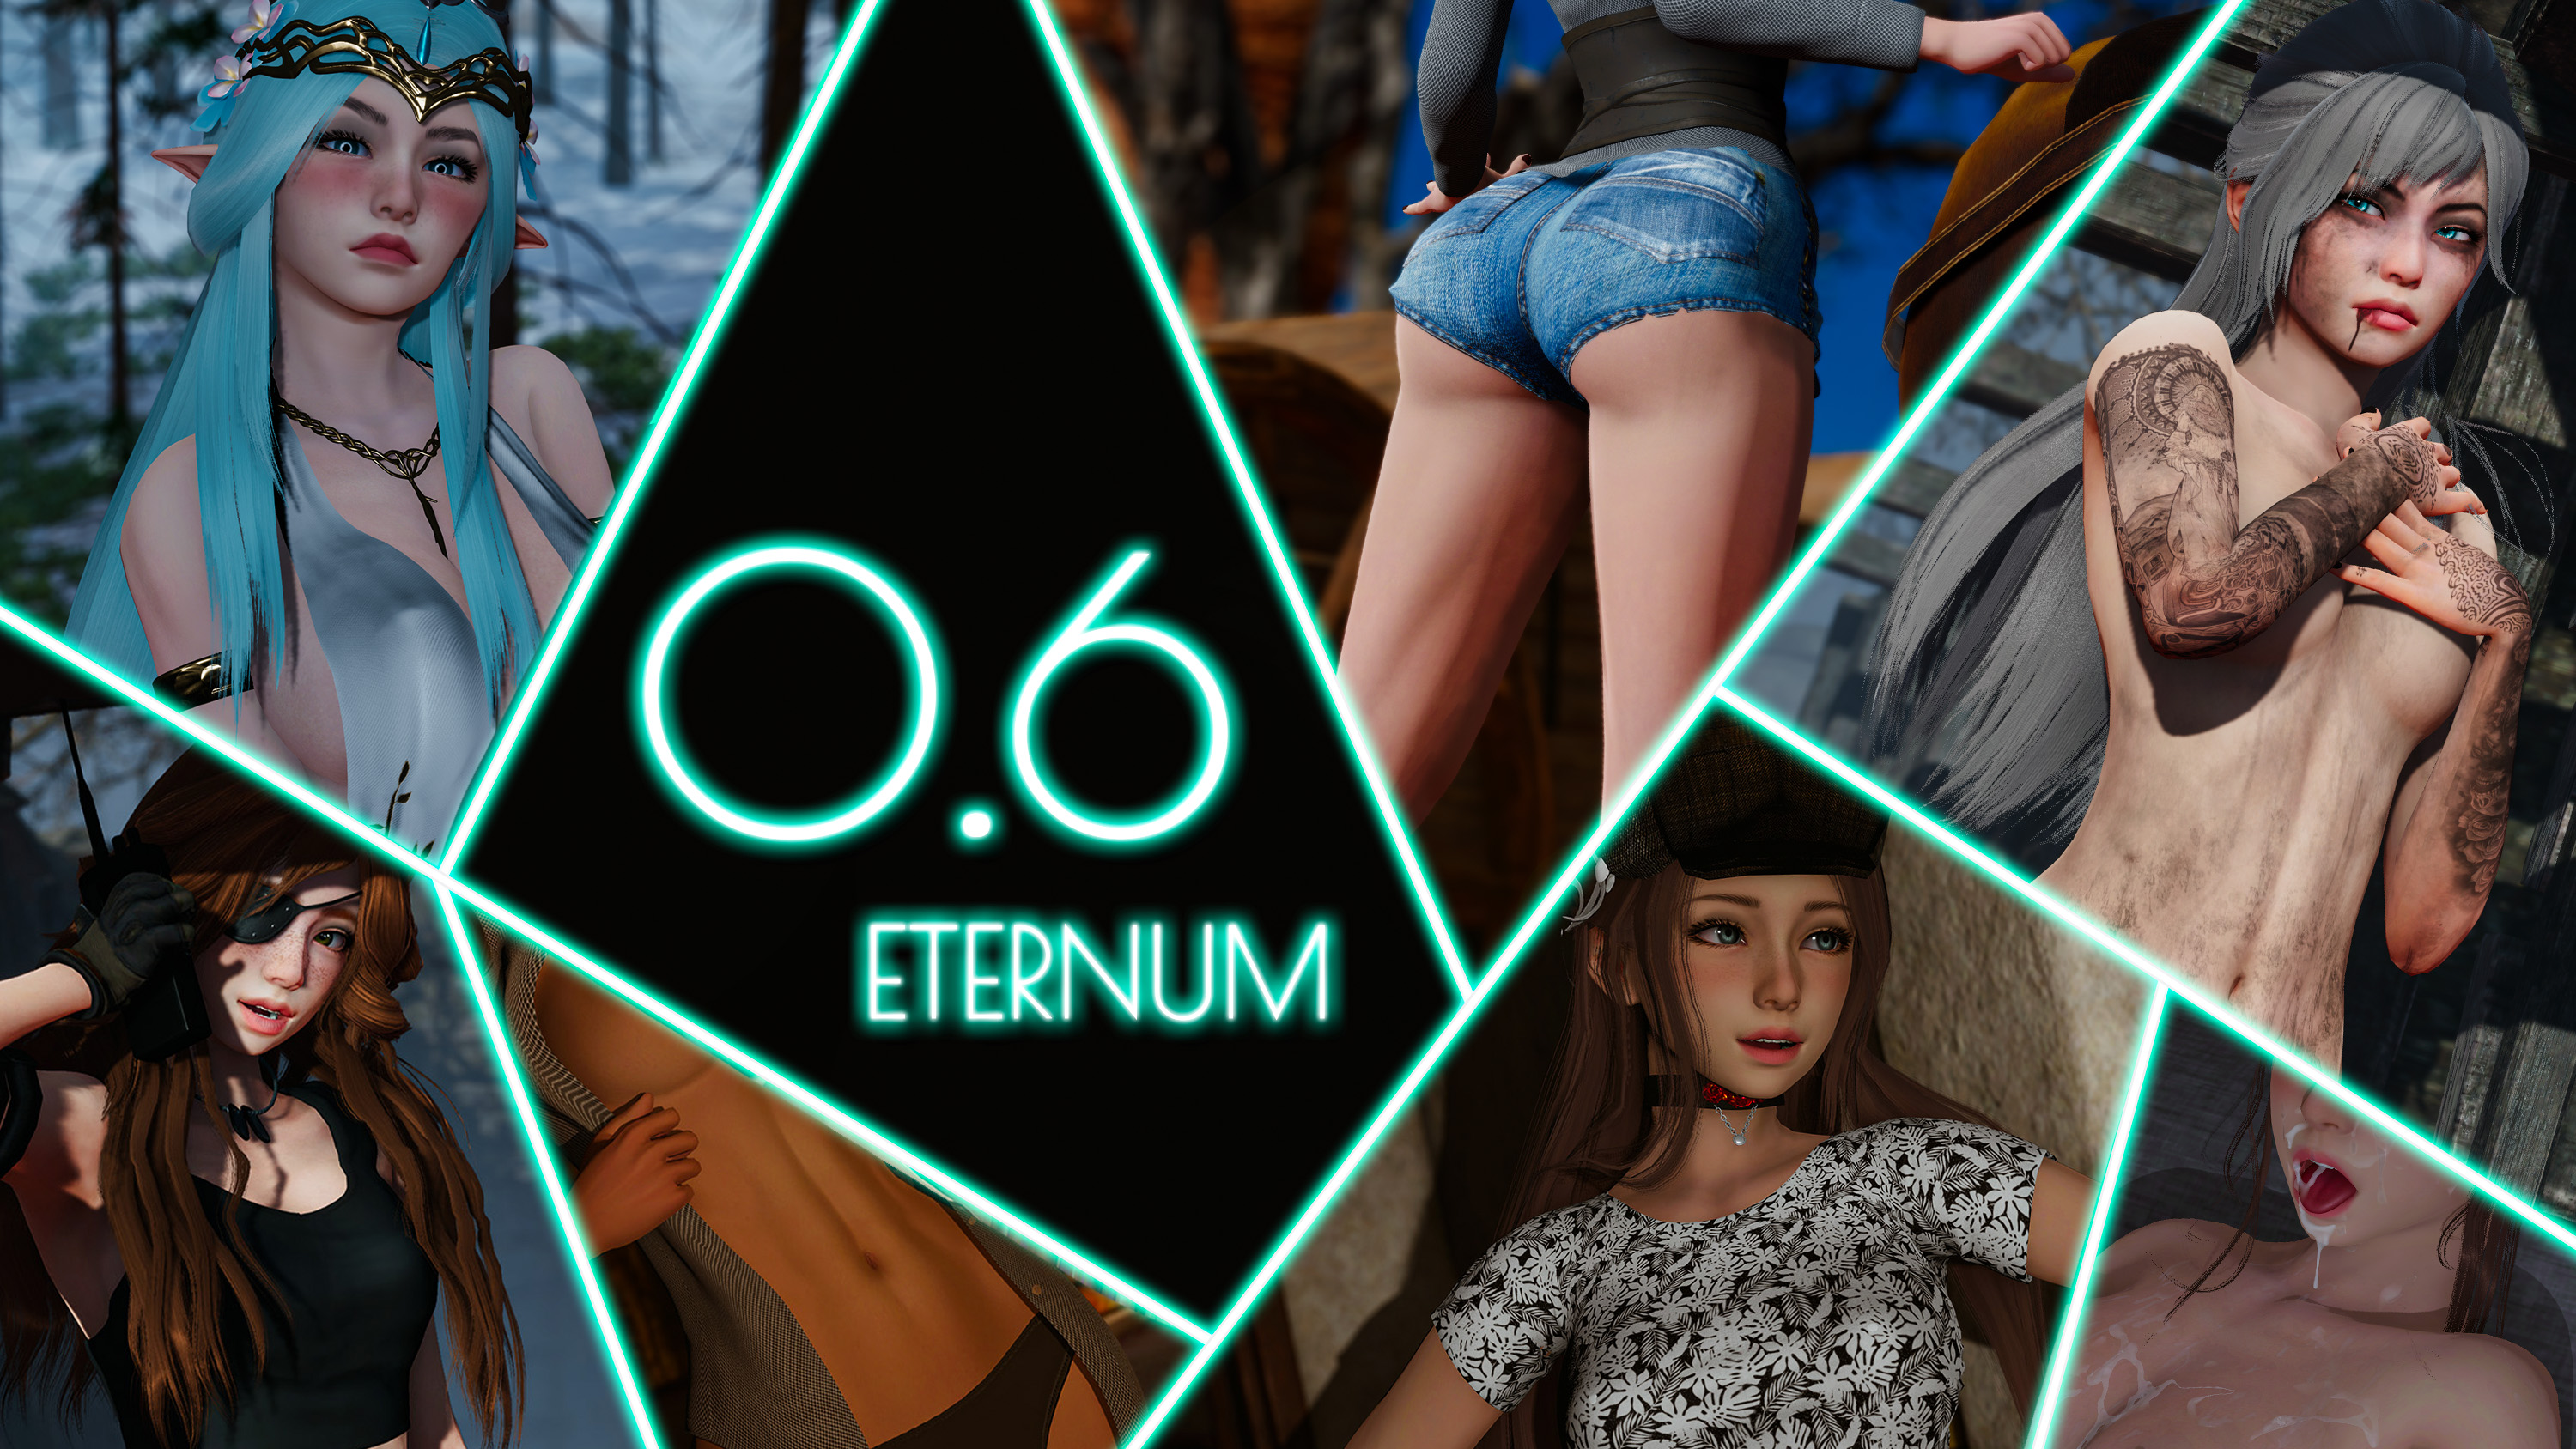 Eternum 0.6